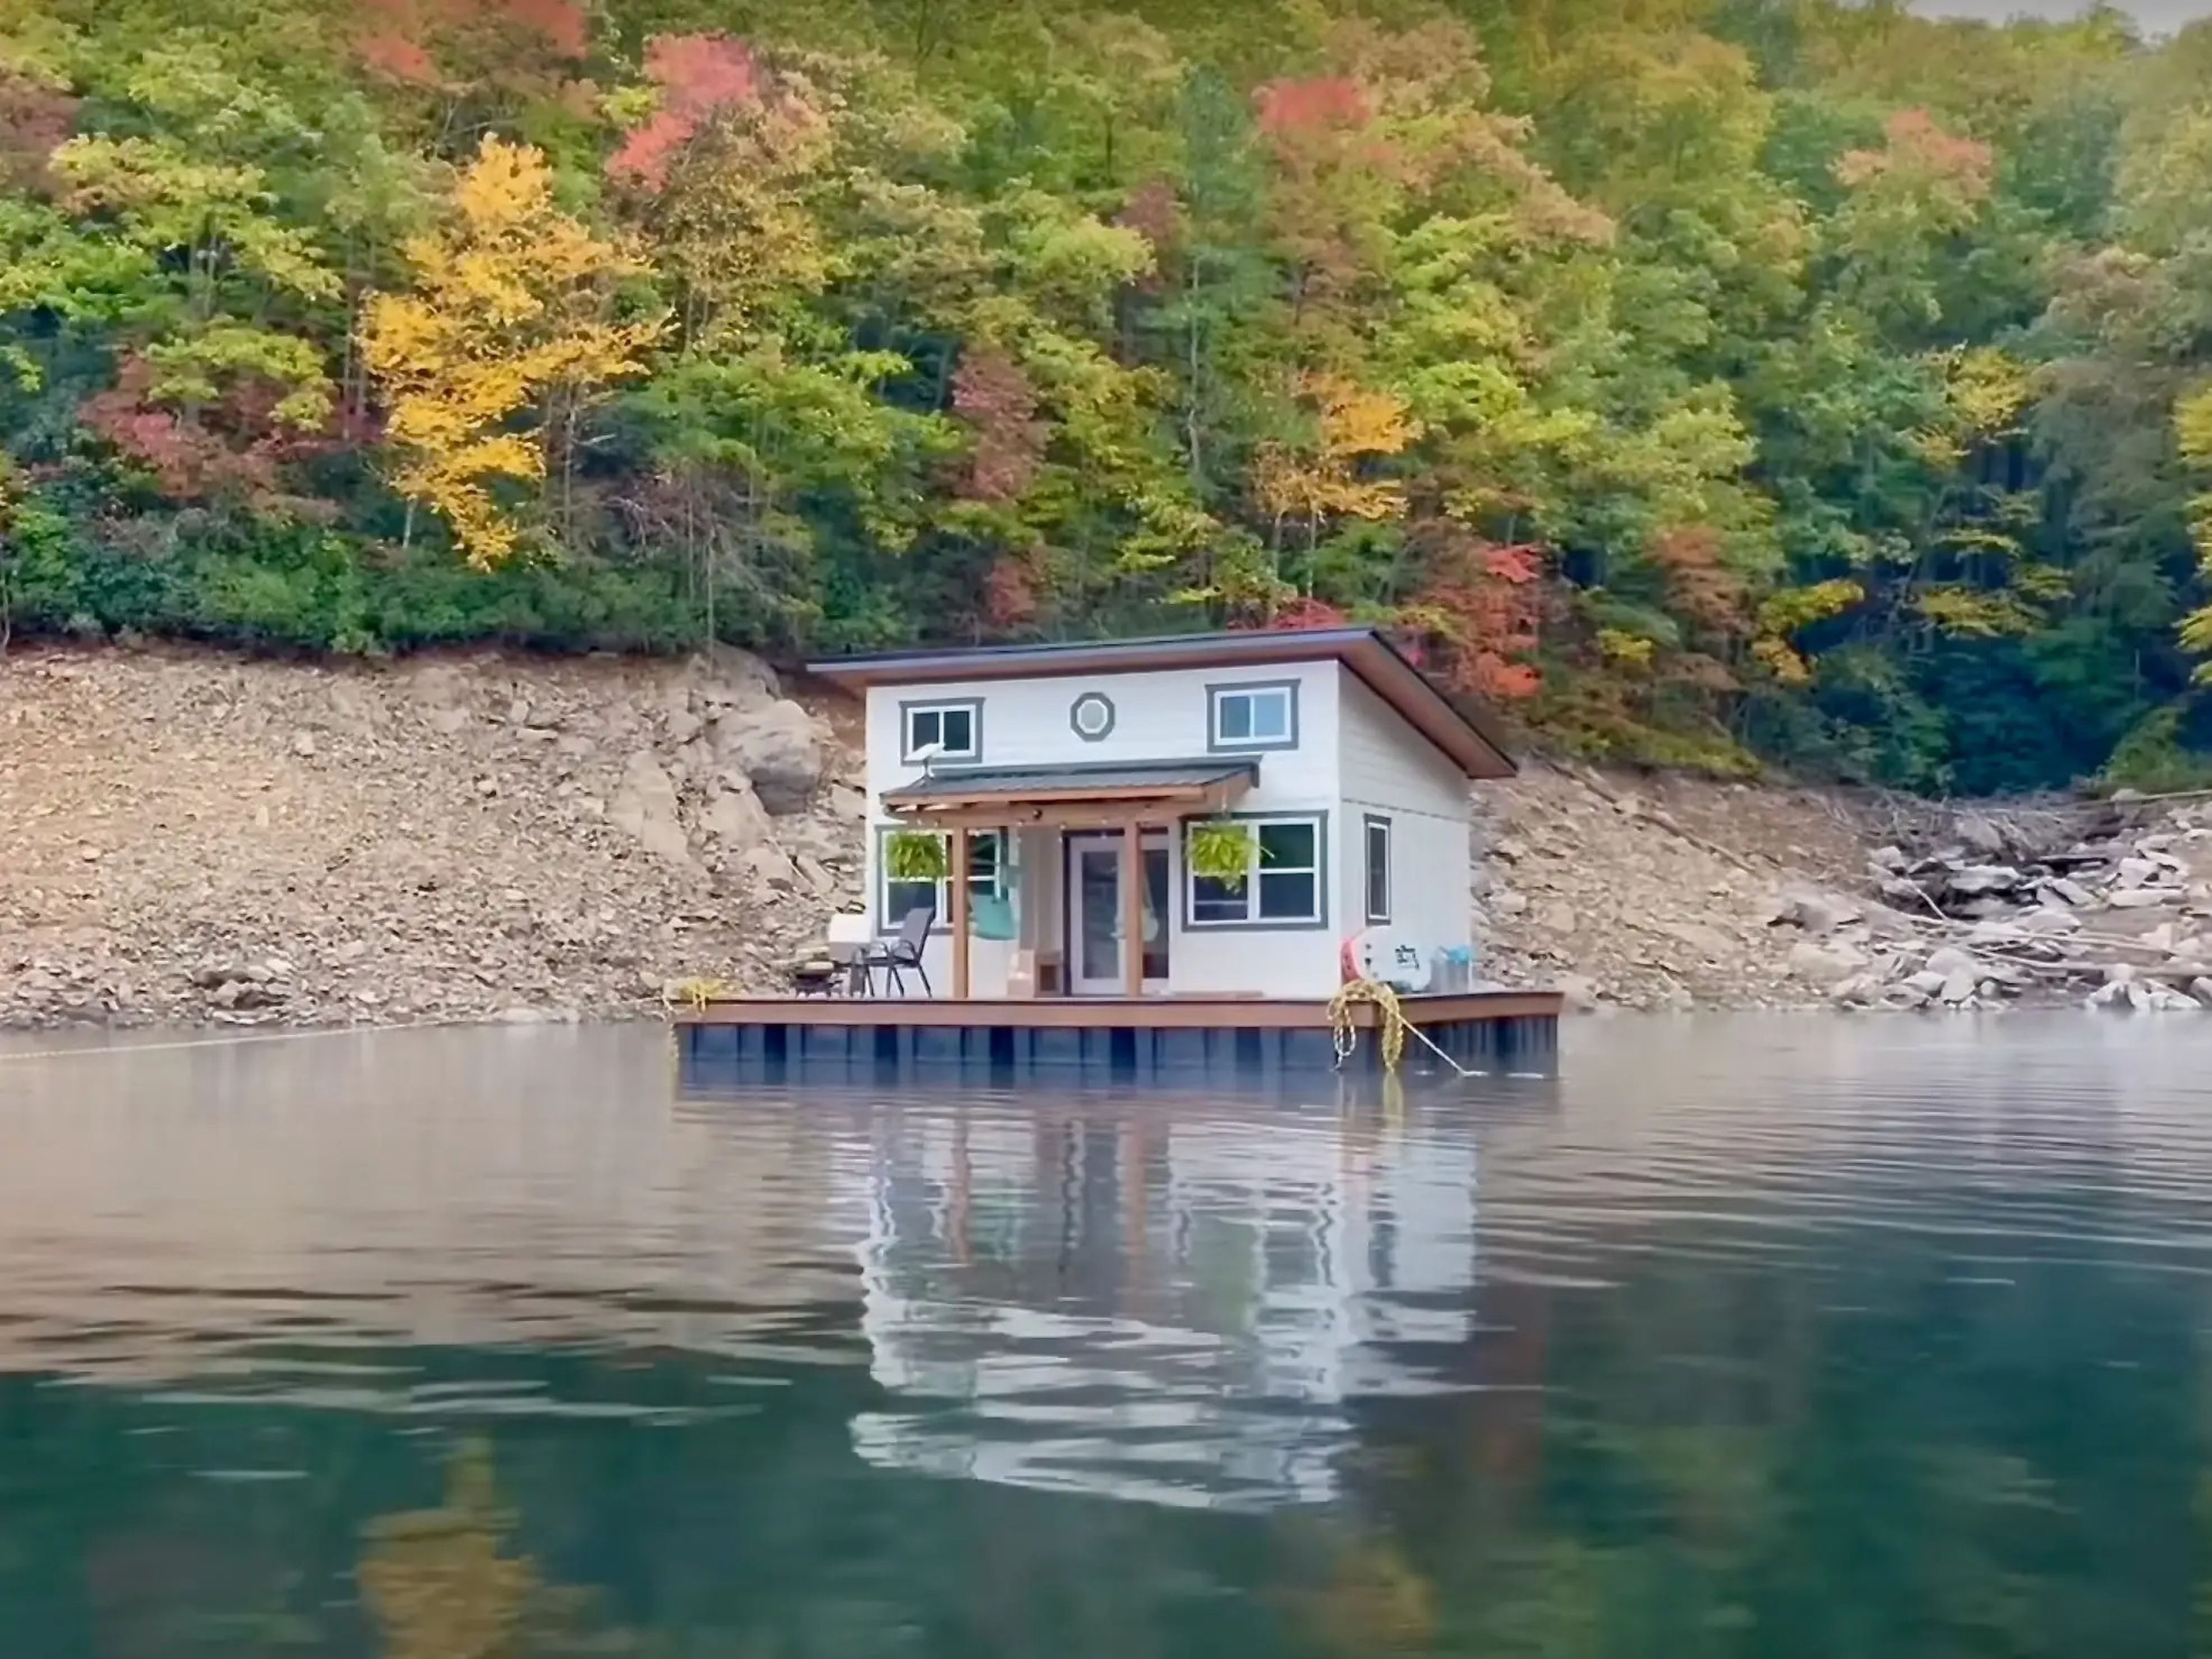 La pareja construyó una casa flotante en medio de un lago de Carolina del Norte.